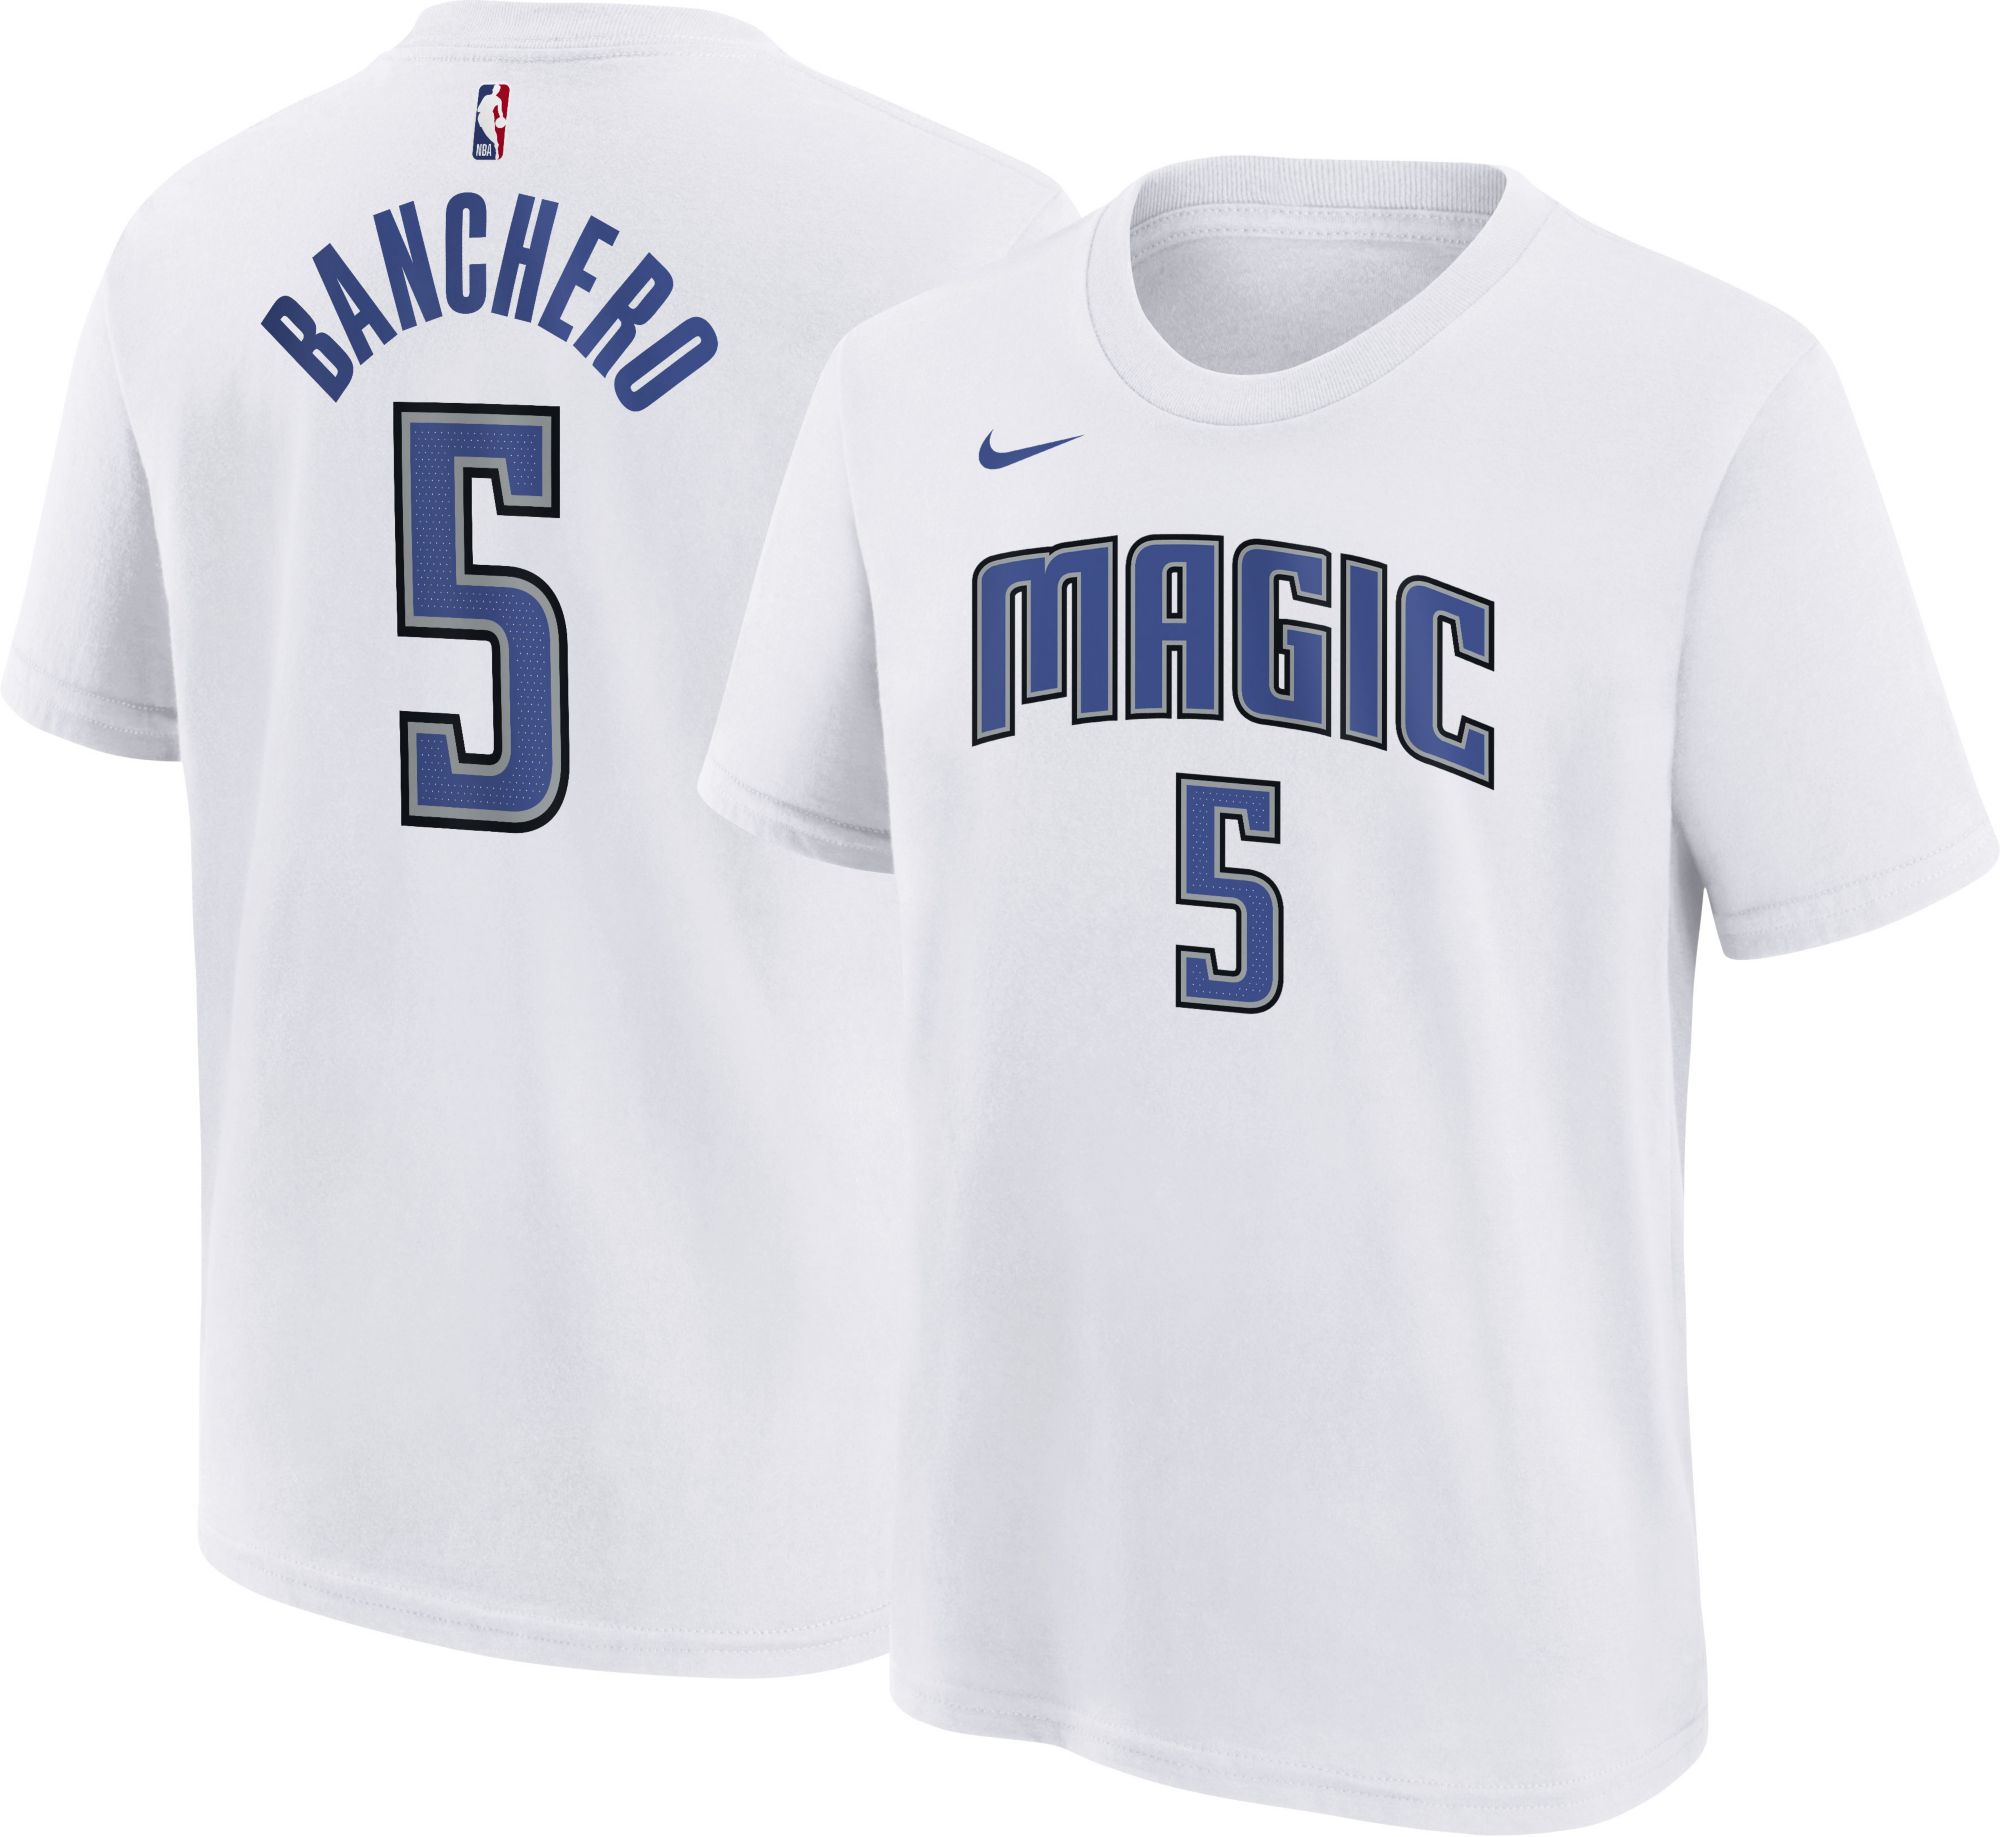 Orlando Magic toddler jersey